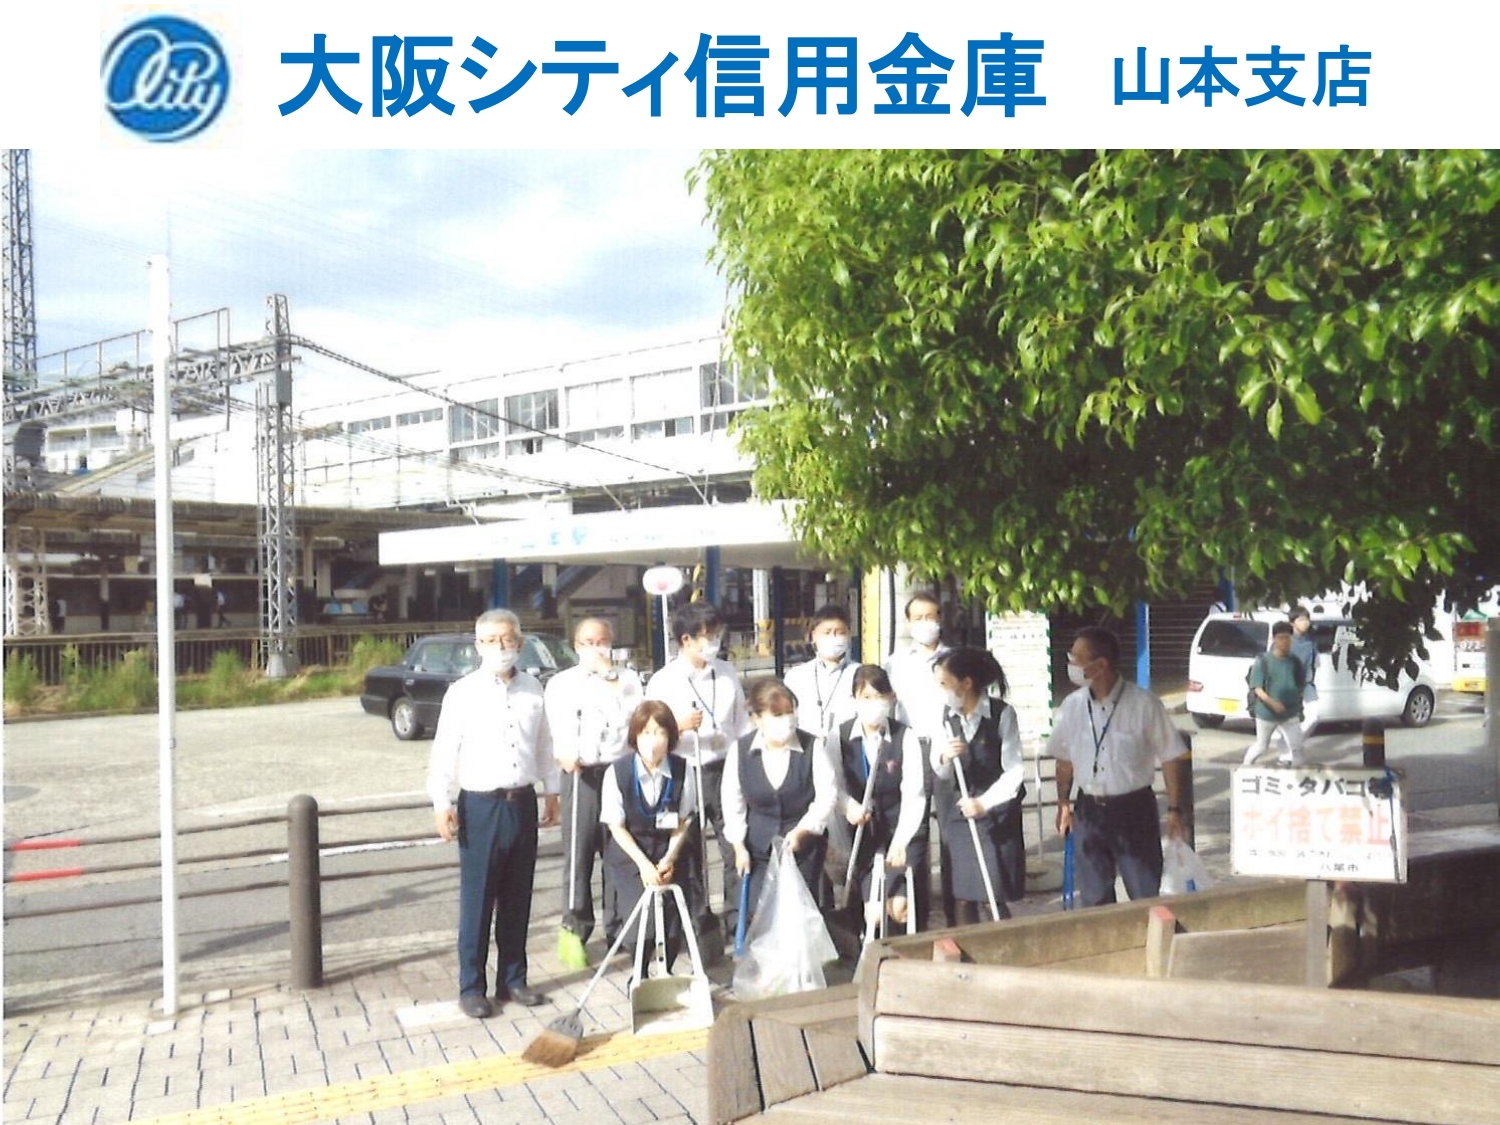 大阪シティ信用金庫　山本支店の清掃画像です。